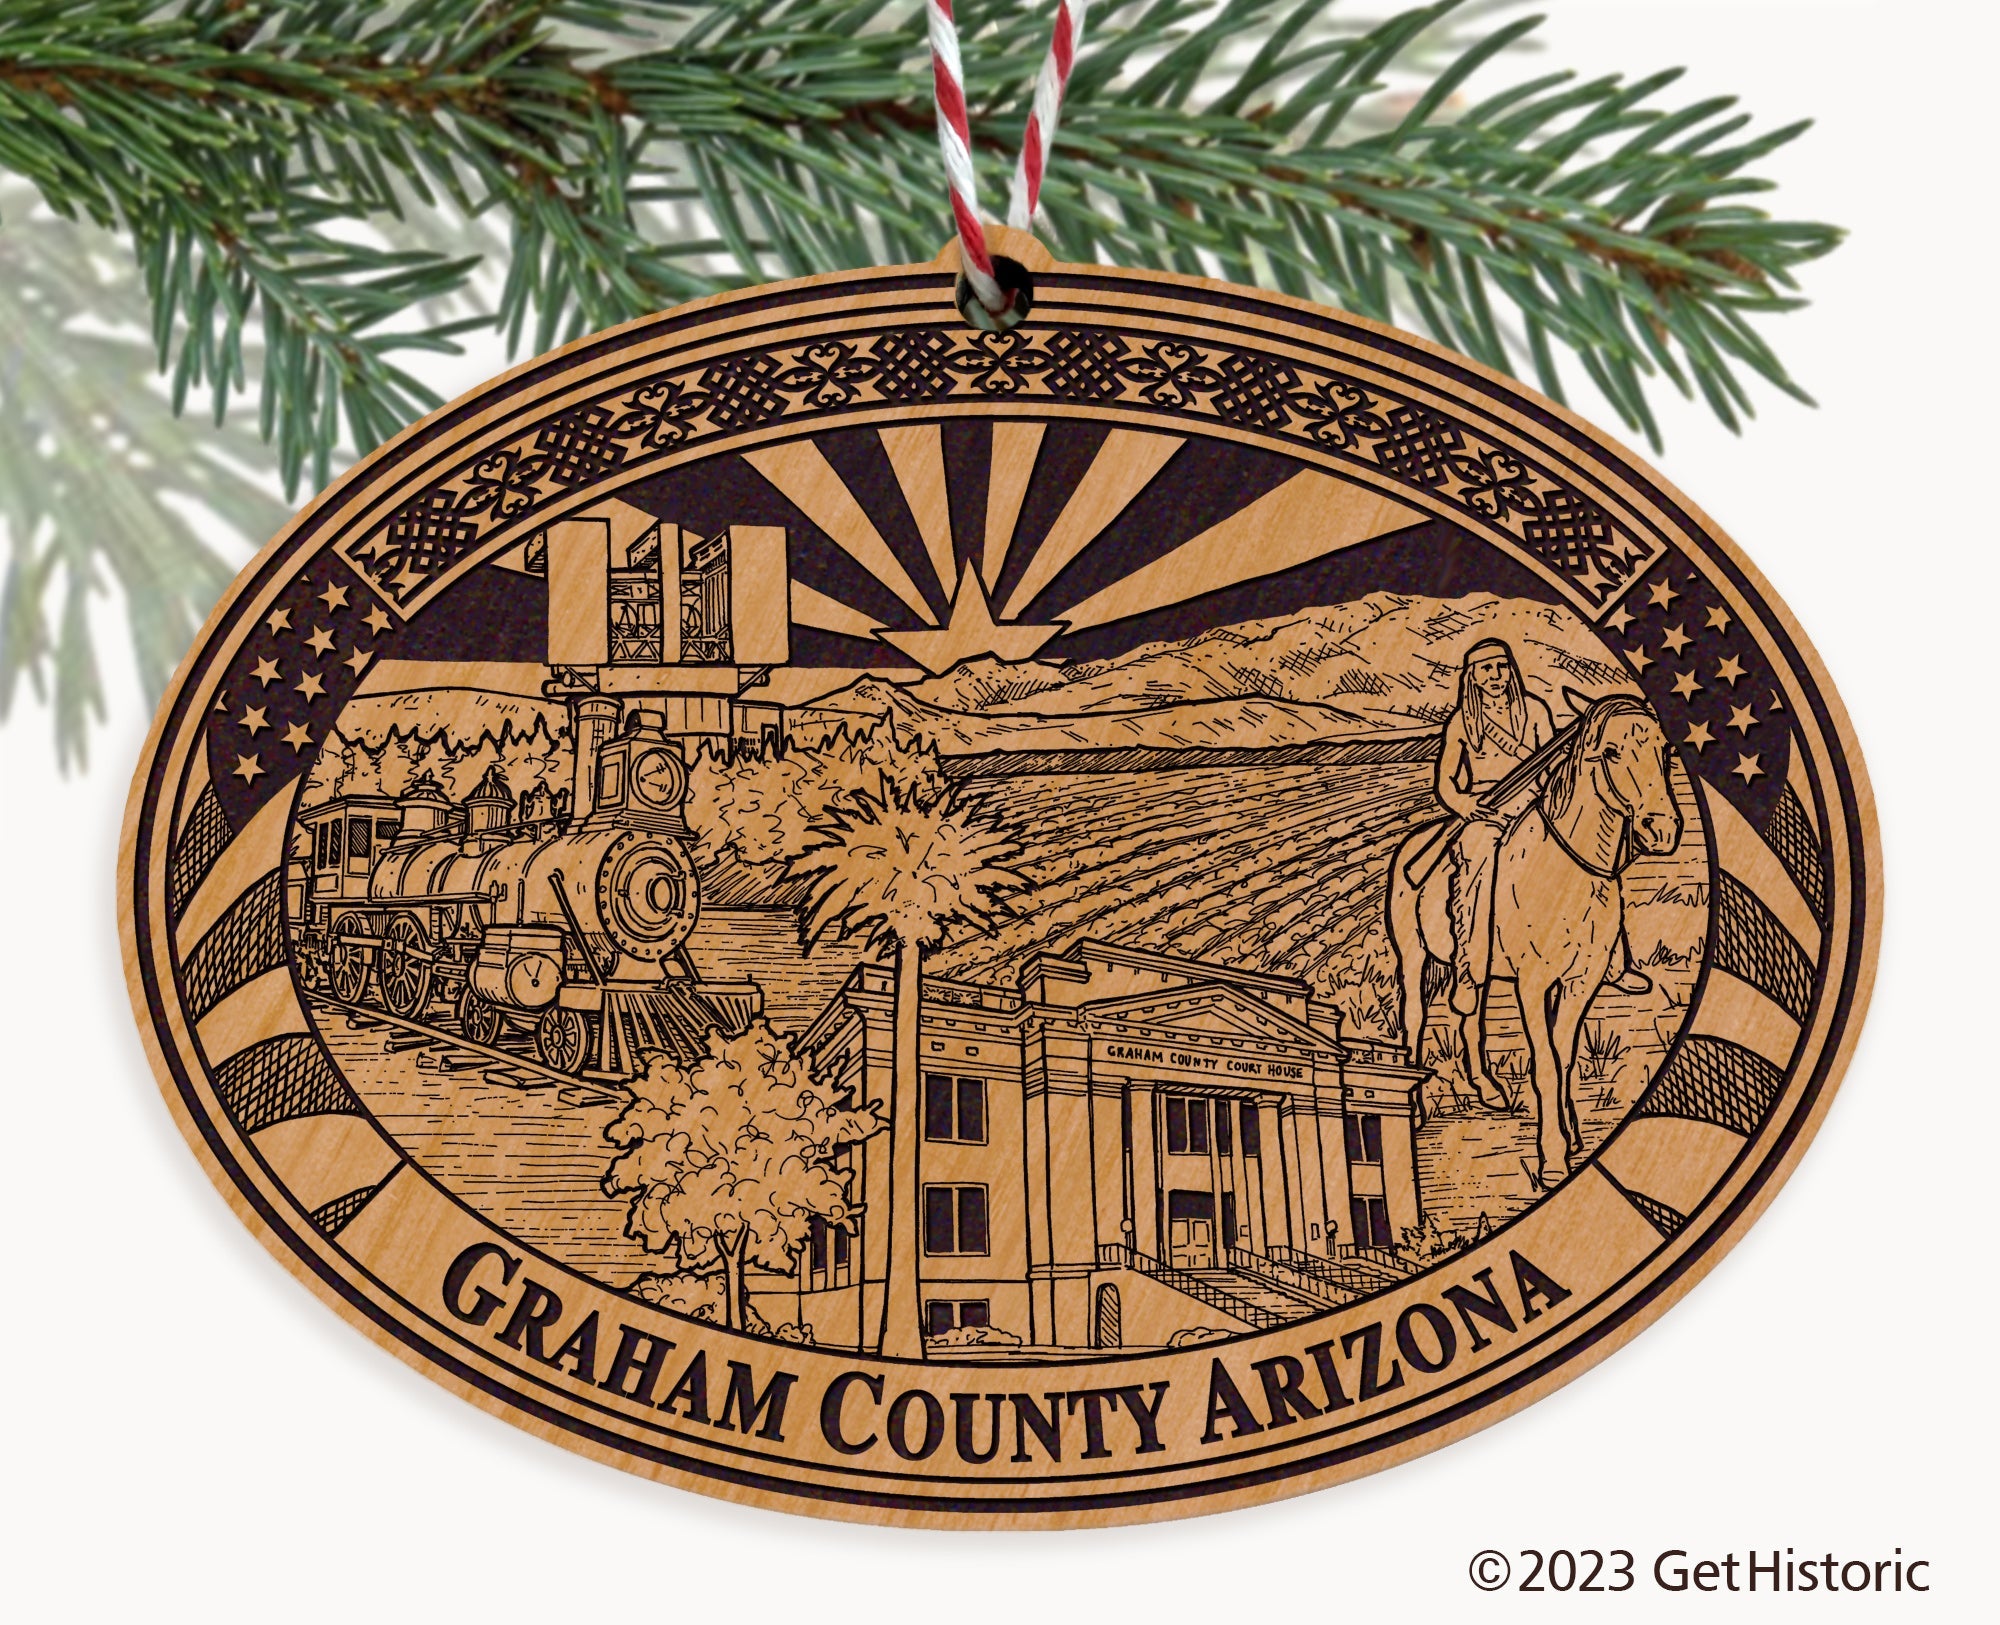 Graham County Arizona Engraved Natural Ornament